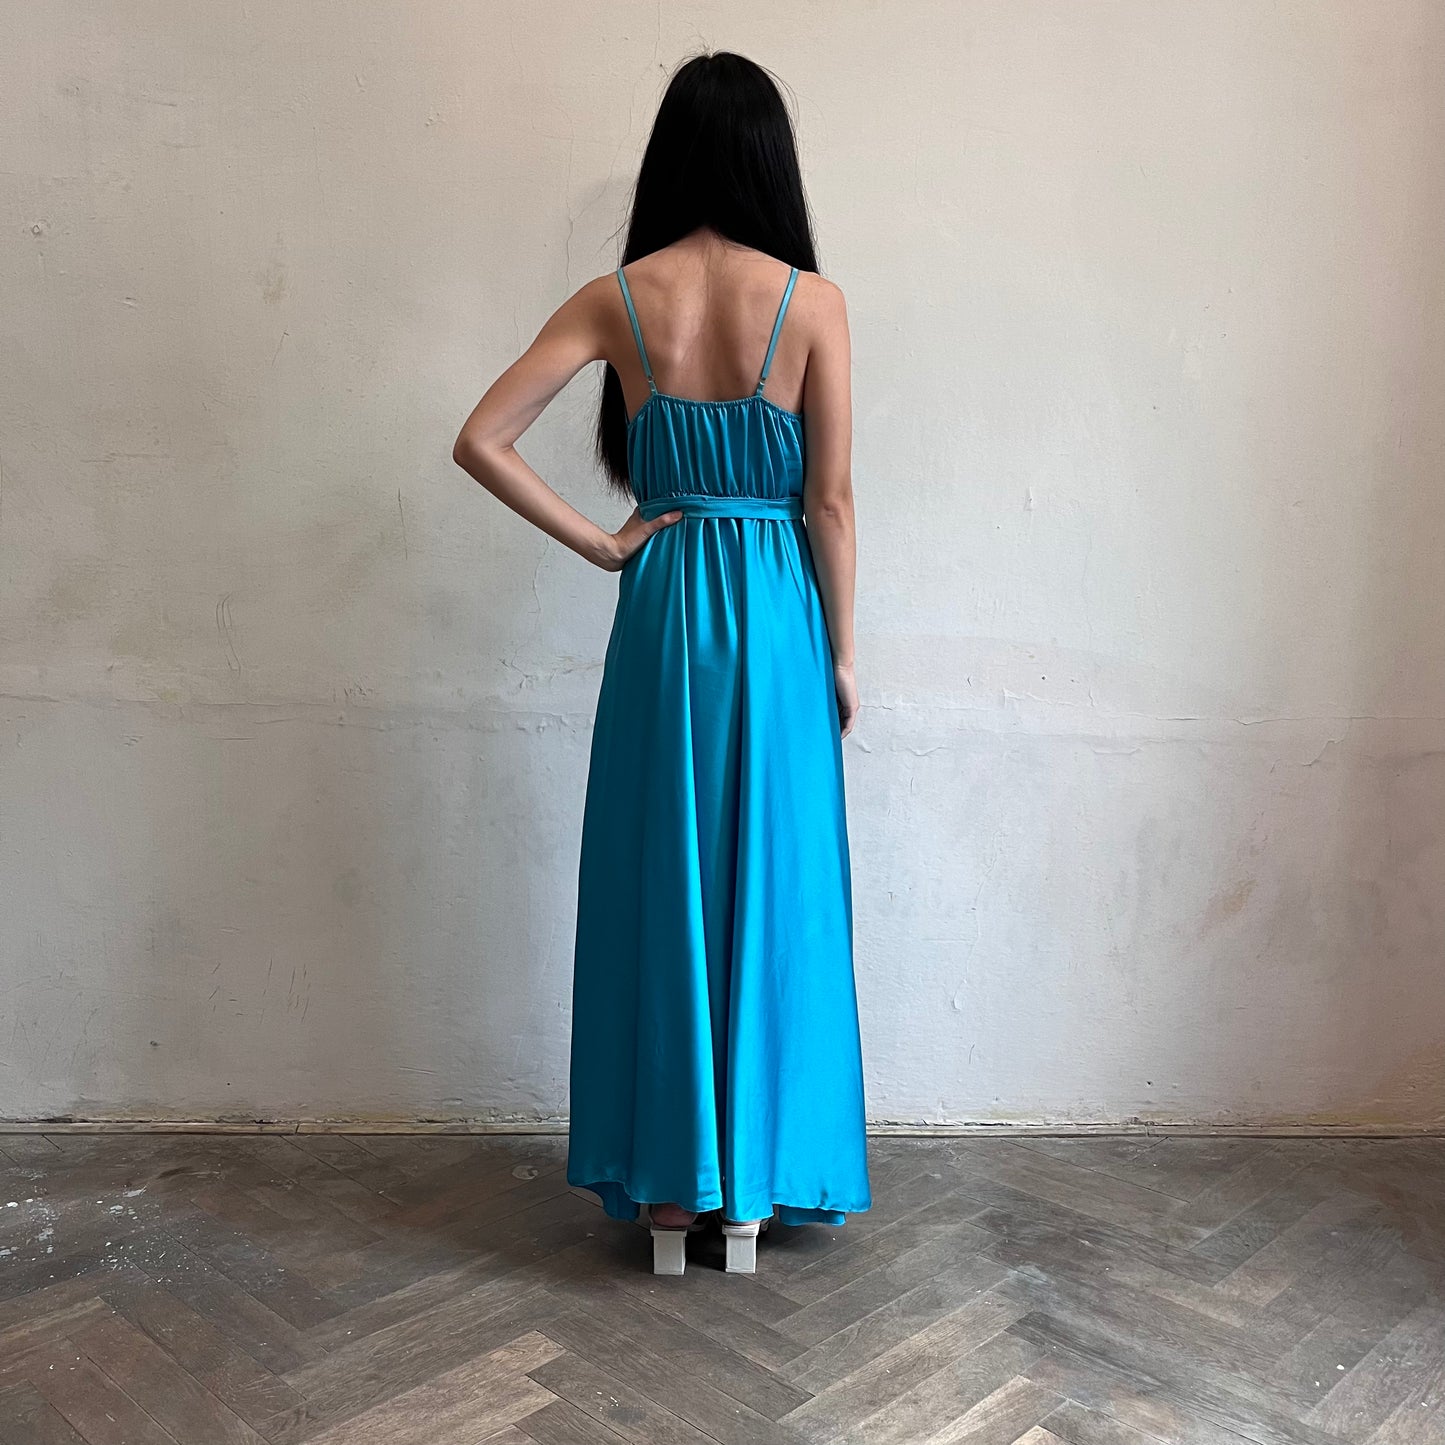 Modelka asijského původu pózující zezadu oblečená v tyrkysových společenských šatech s rozparkem